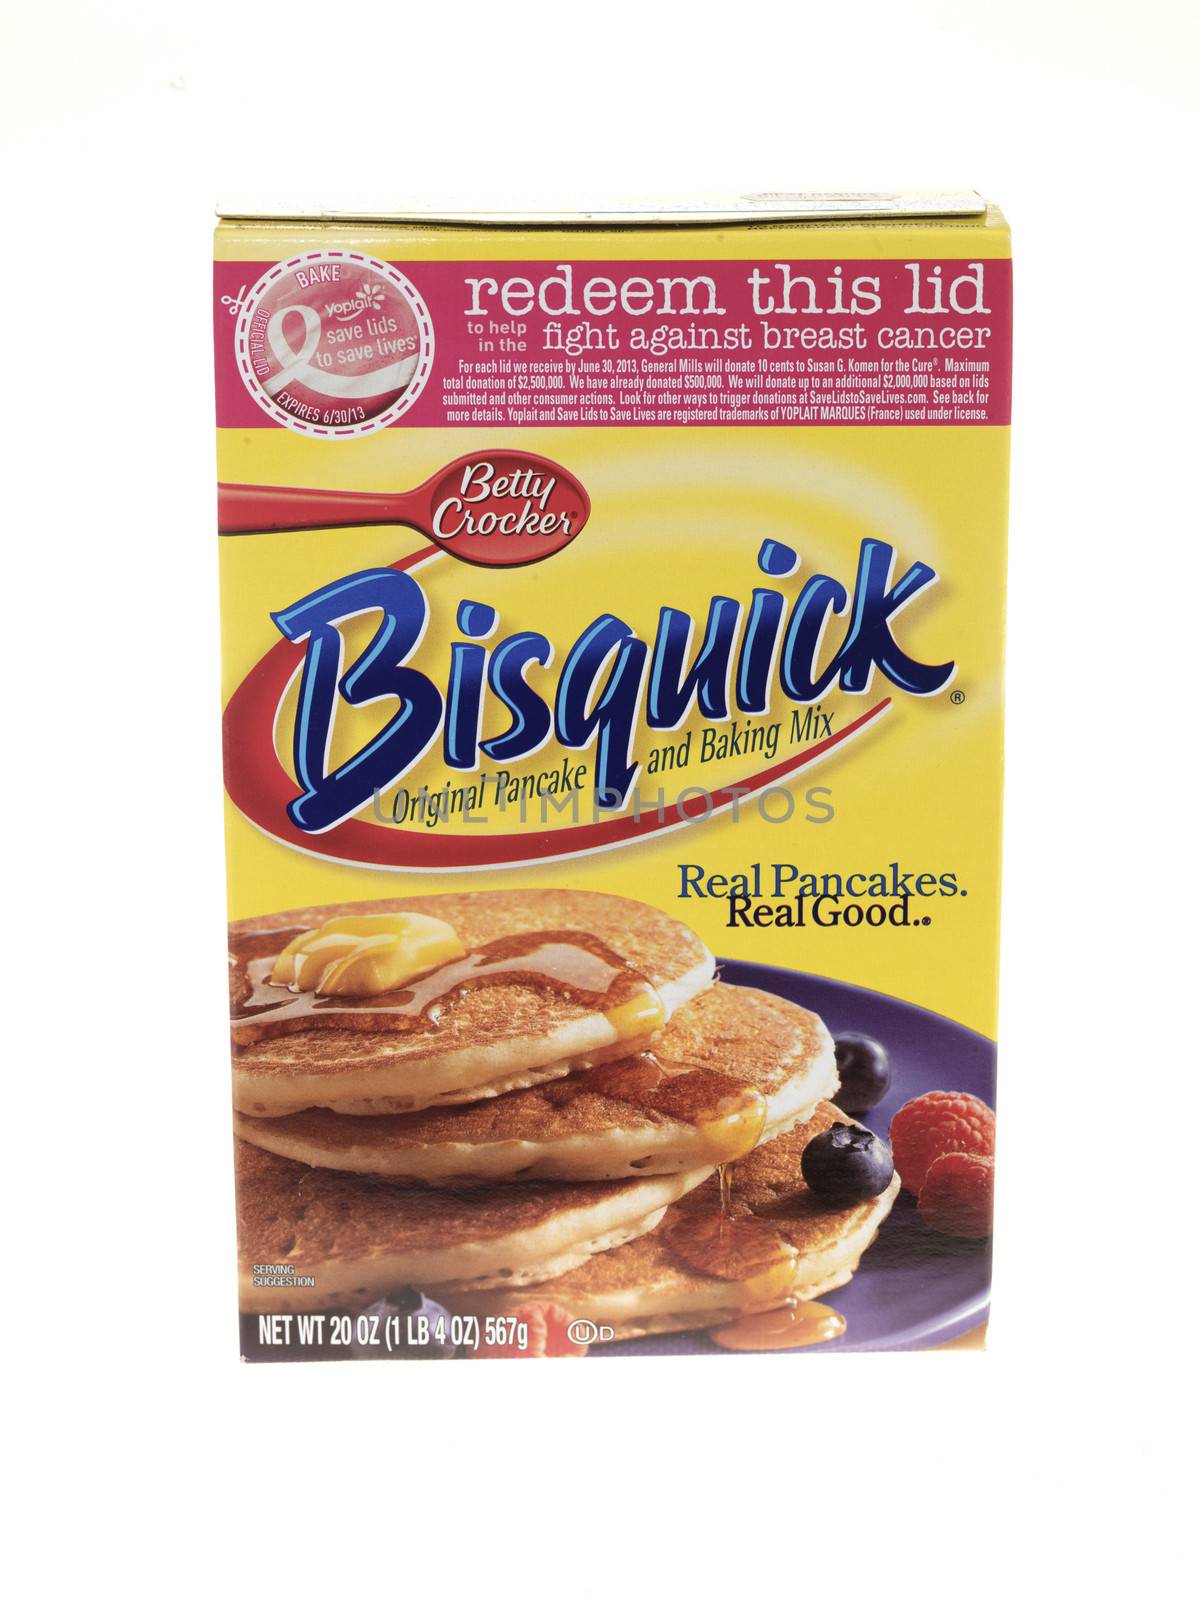 Bisquick Pancake Mix